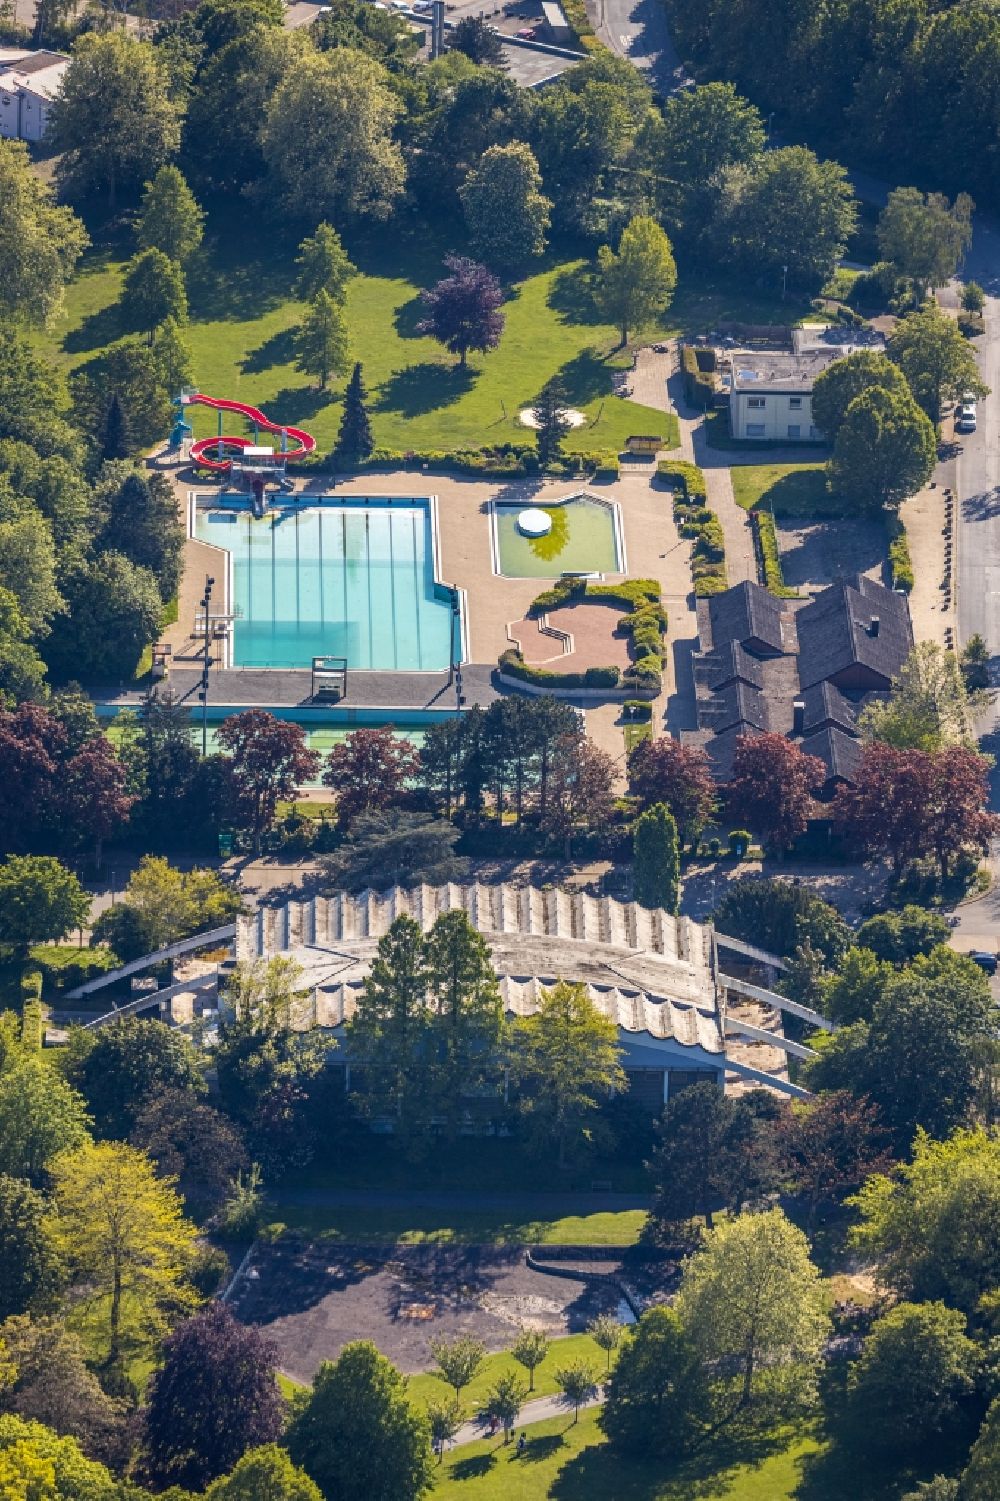 Luftaufnahme Kamen - Wasserrutsche am Schwimmbecken des Freibades Freibad Kamen-Mitte Am Schwimmbad in Kamen im Bundesland Nordrhein-Westfalen, Deutschland